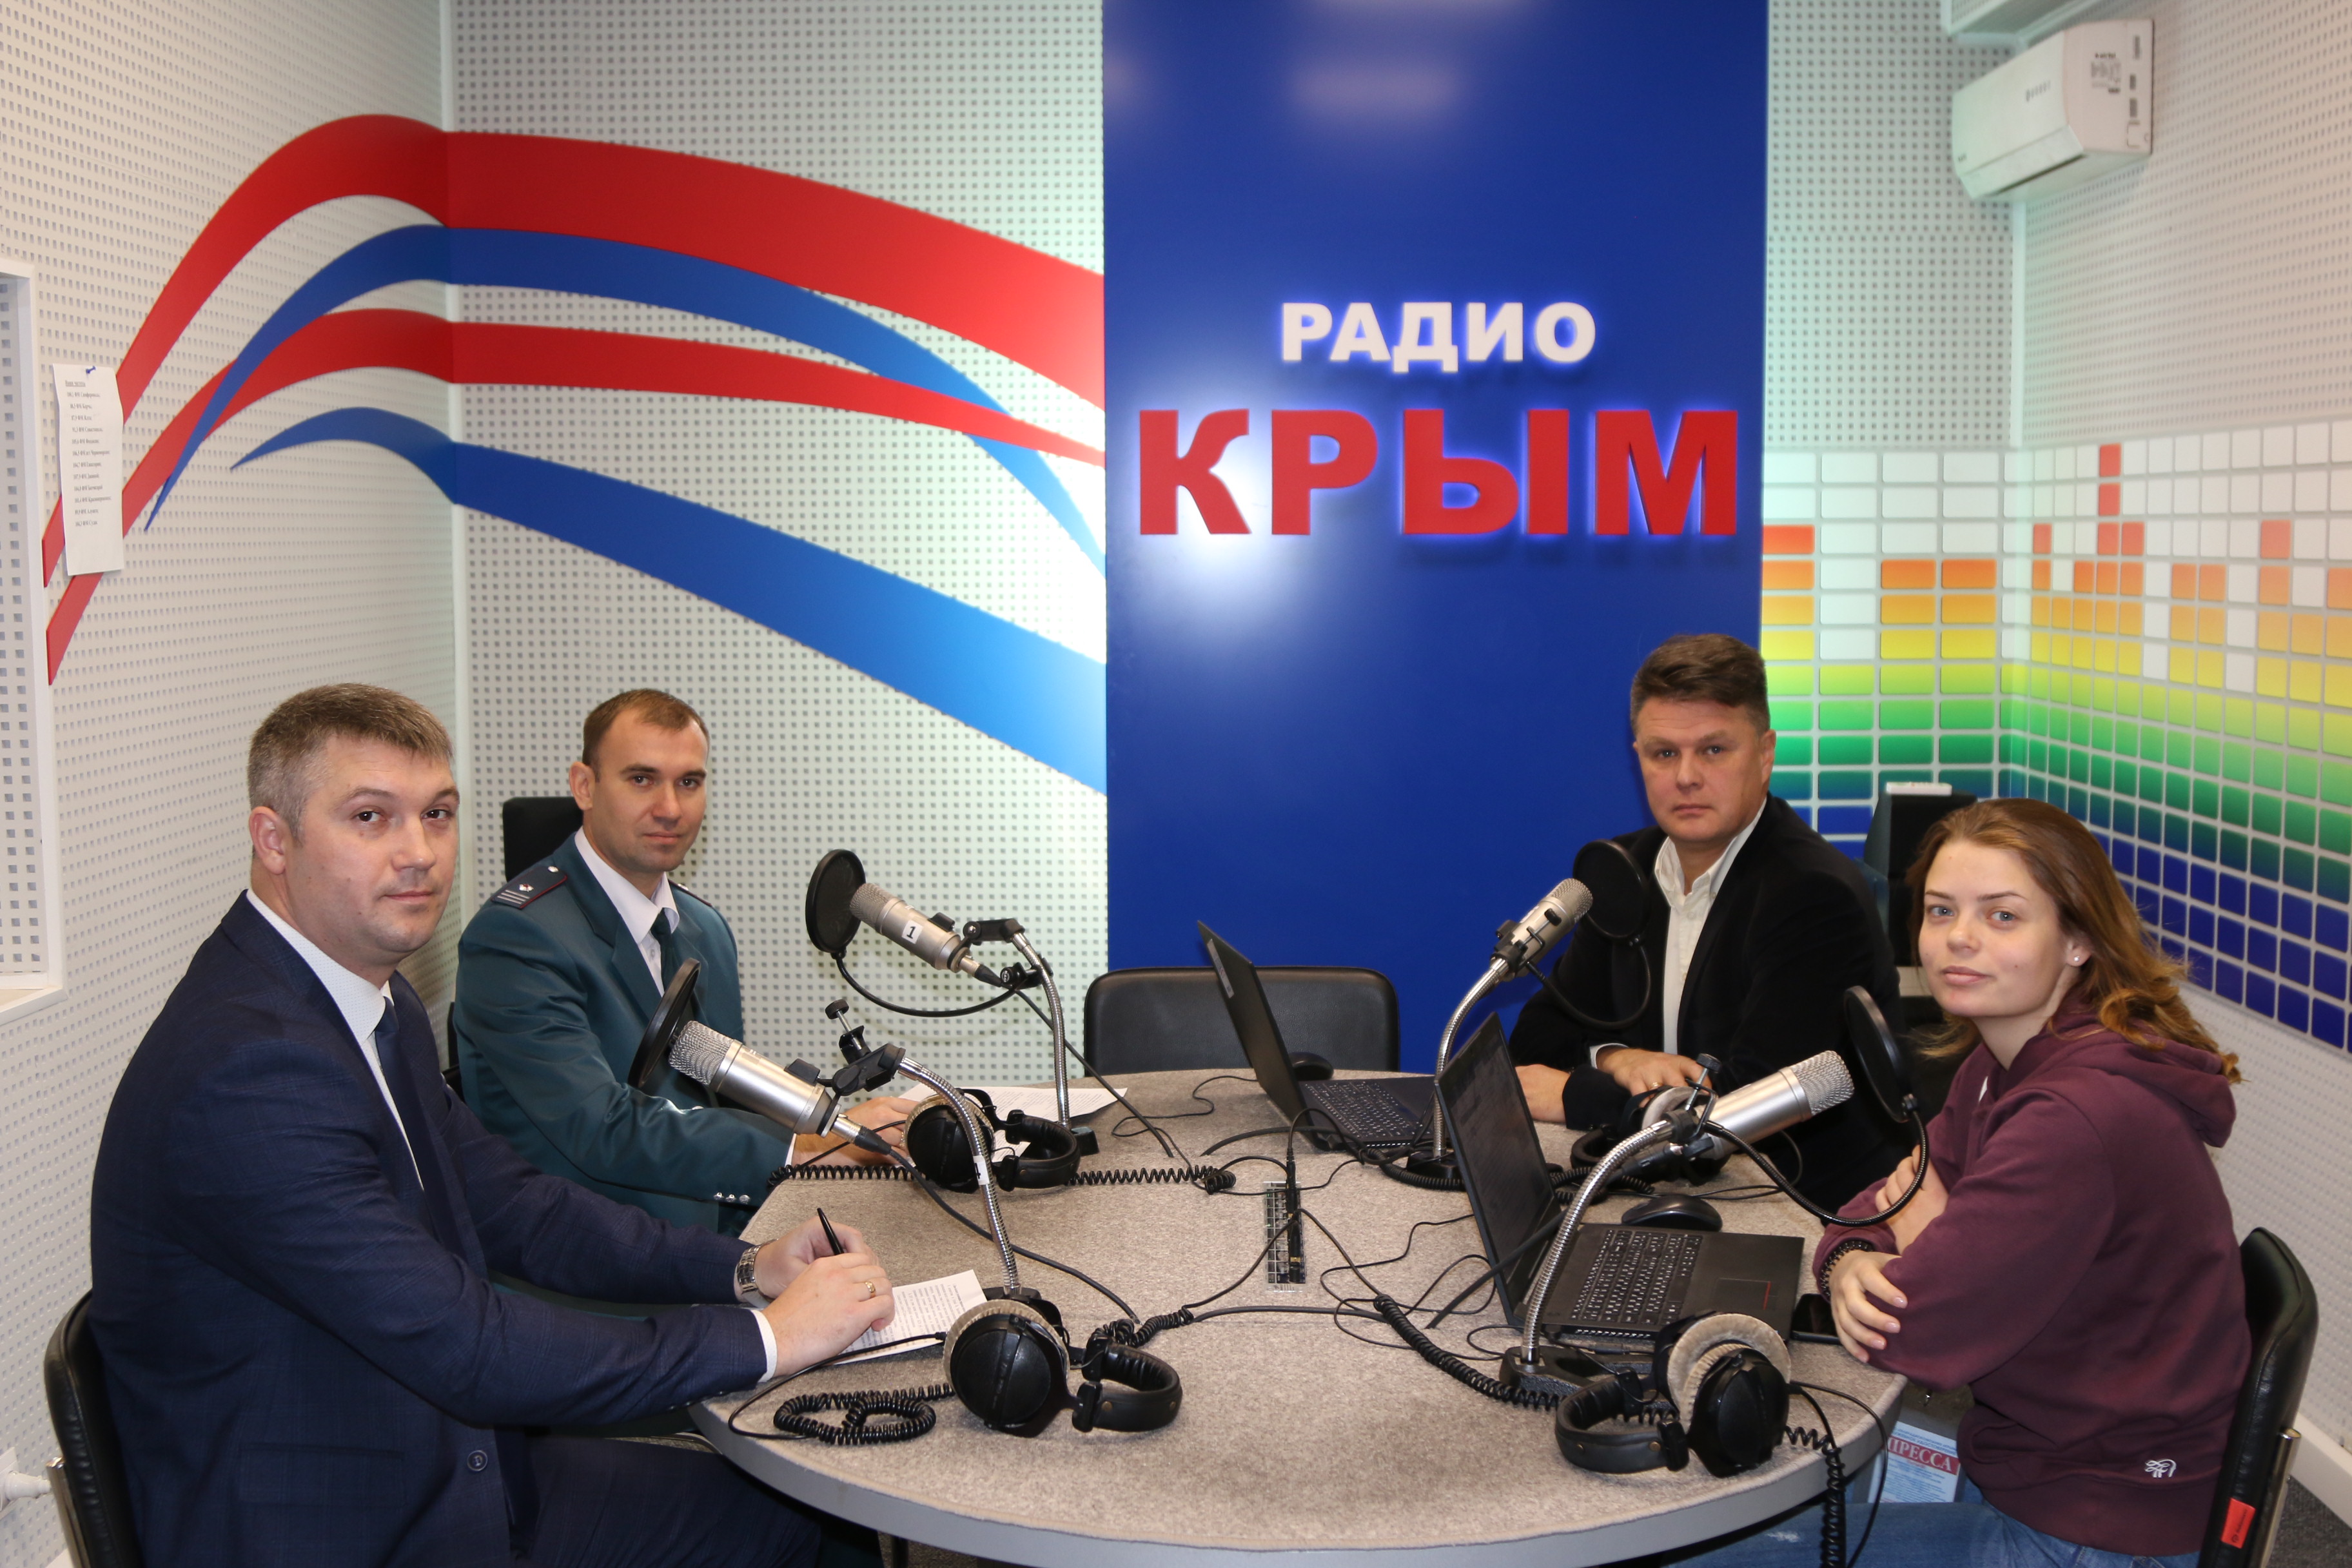 Радио Крым. Радио Крым телефон прямого эфира.